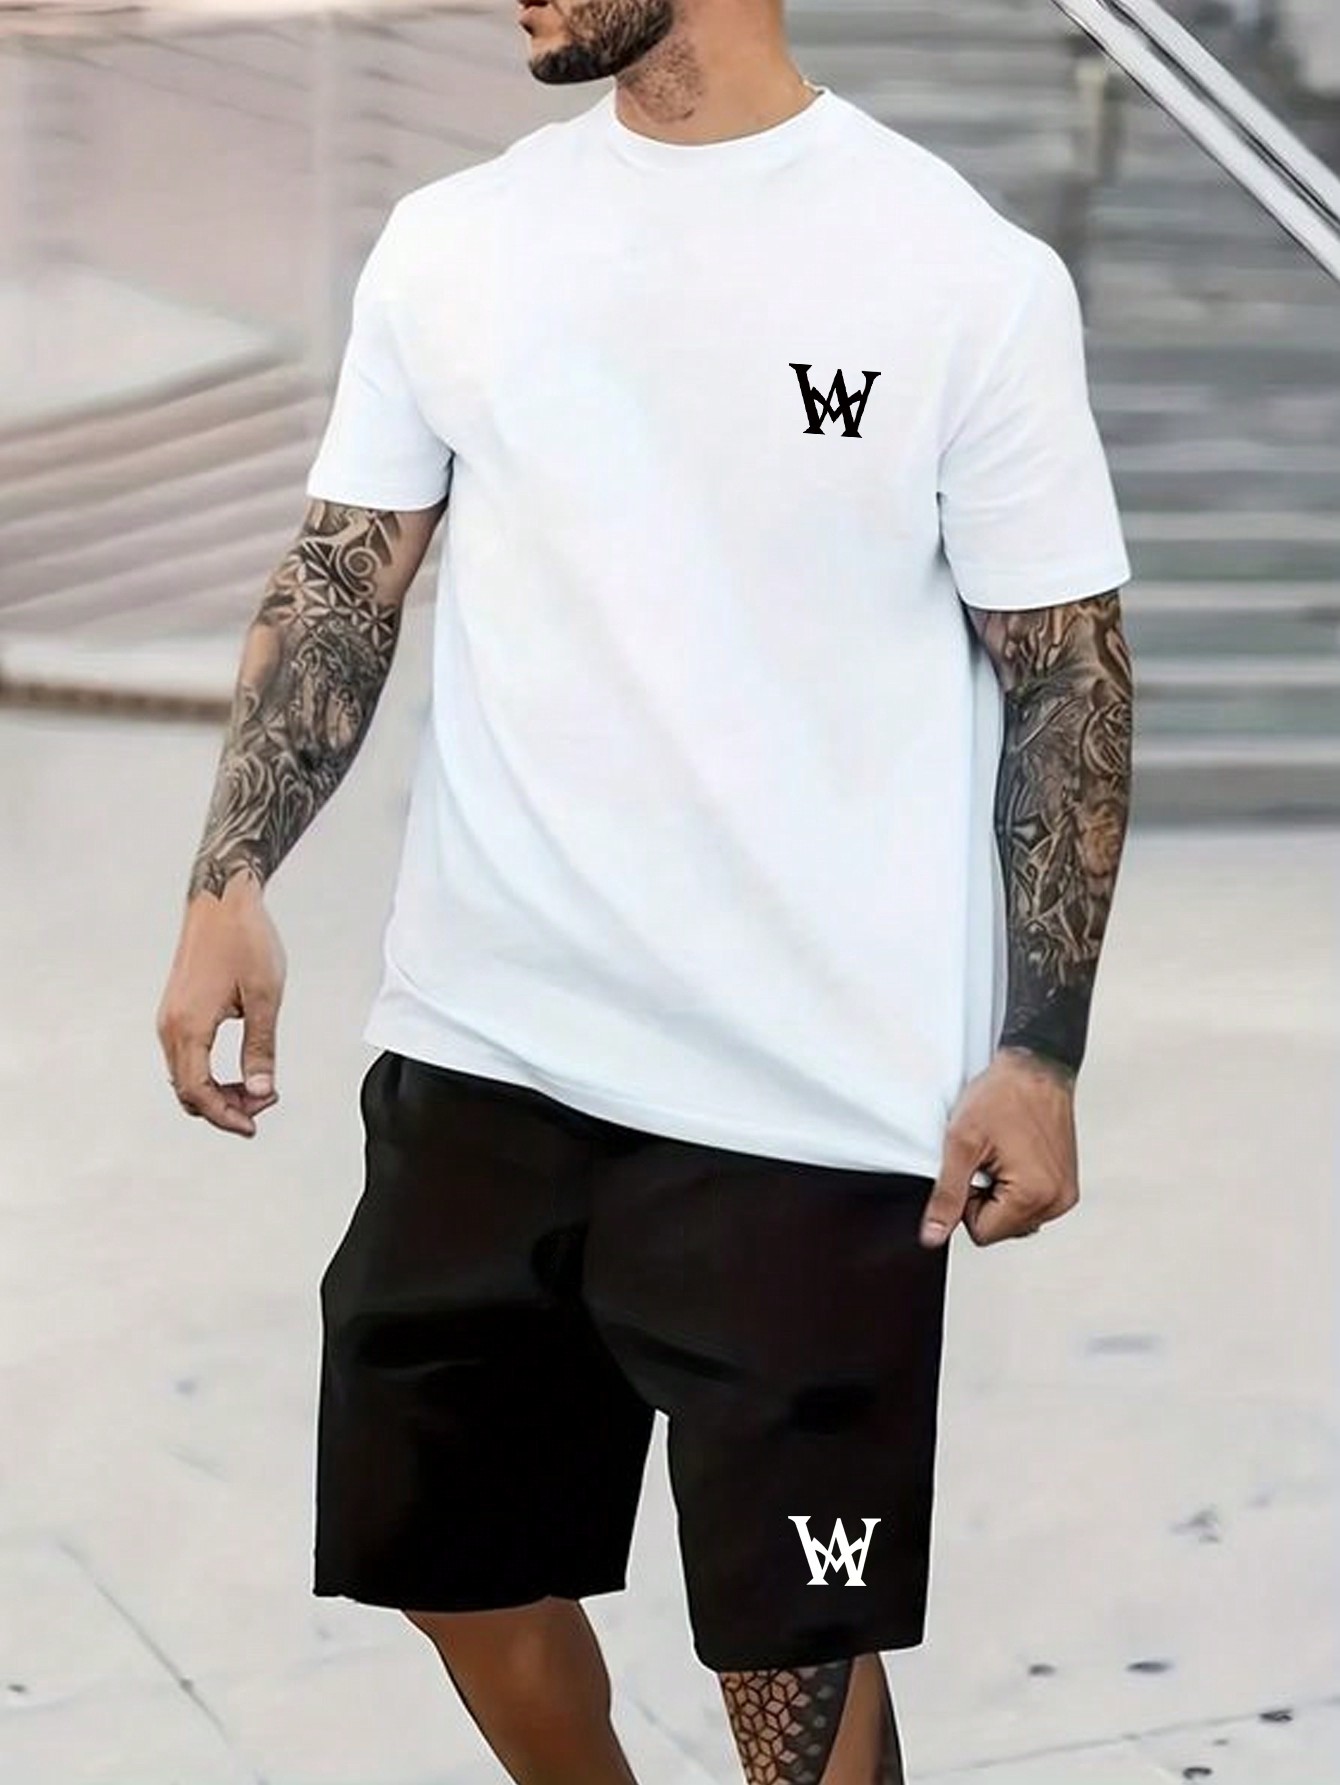 Мужская футболка с короткими рукавами и шорты с буквенным принтом больших размеров Manfinity Homme, черное и белое